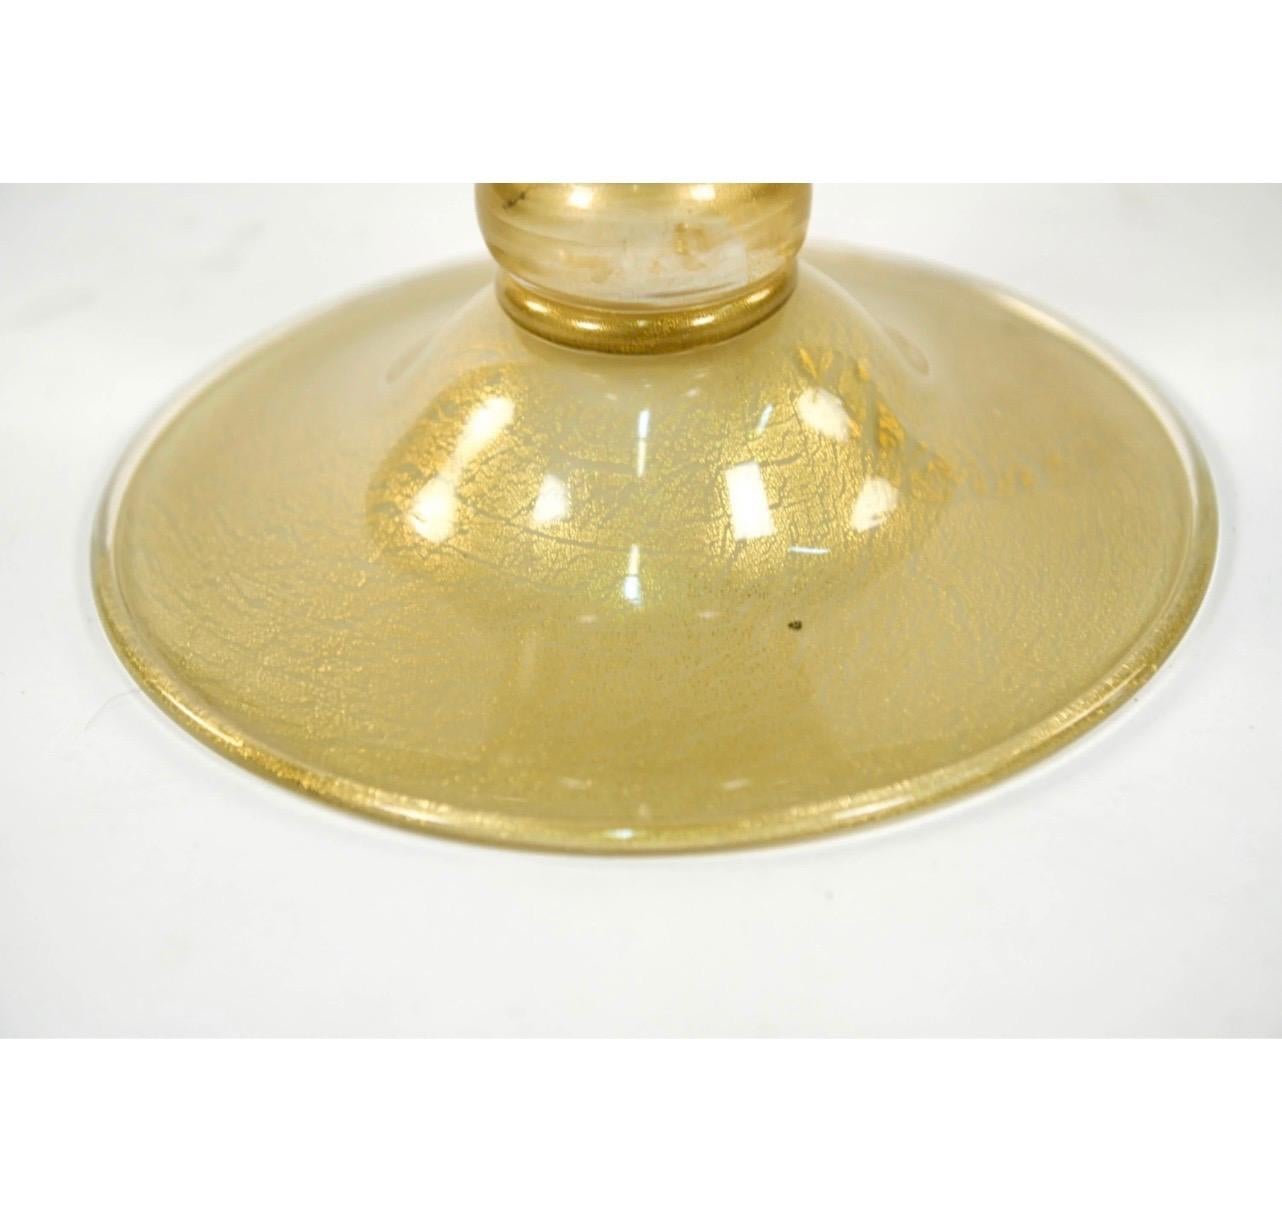 Lorin Marsh Seguso Vasija de concha con tapa de cristal de Murano italiano Fleck dorado Vidrio soplado en venta